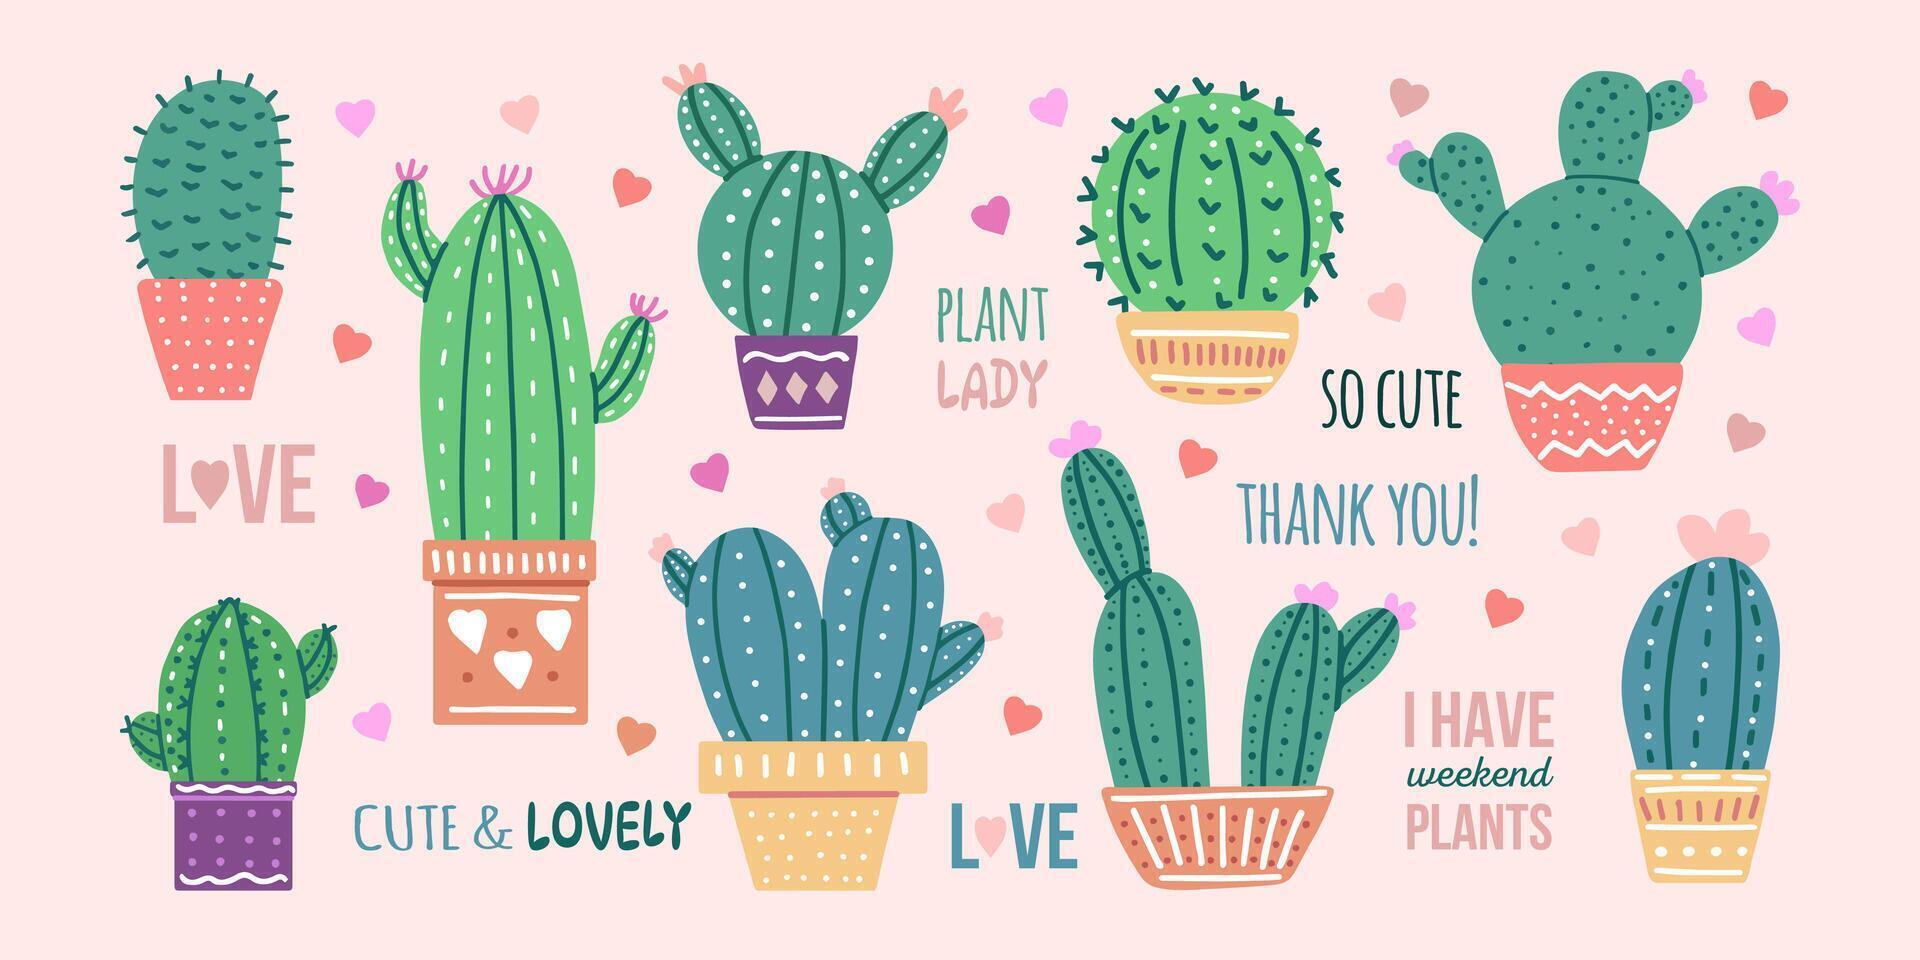 ritad för hand vektor kaktusar uppsättning med kalligrafi, text. platt stil grafisk design av taggig växter, blomning kaktusar, saftig växter i färgrik keramisk krukor. Hem växter, mexico kaktus, baner